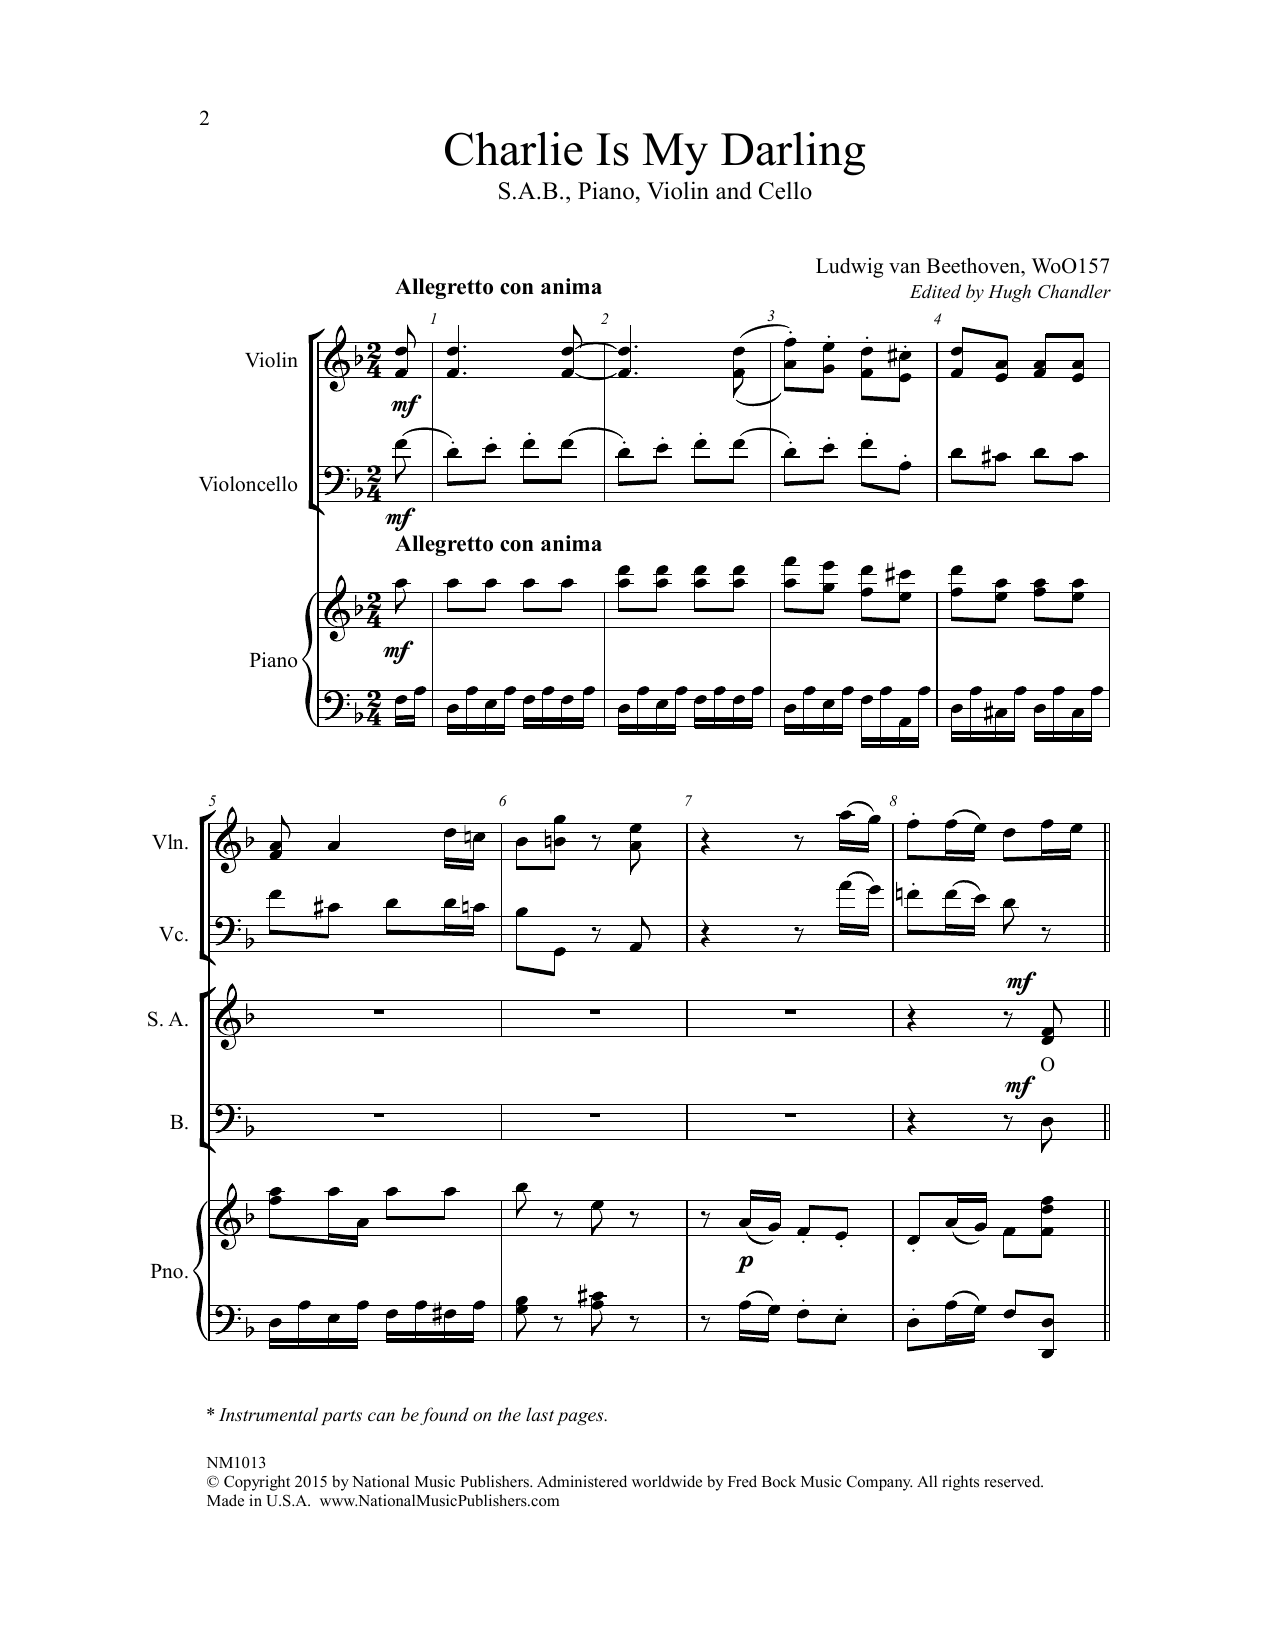 Download Ludwig van Beethoven Charlie Is My Darling (ed. Hugh Chandle Sheet Music